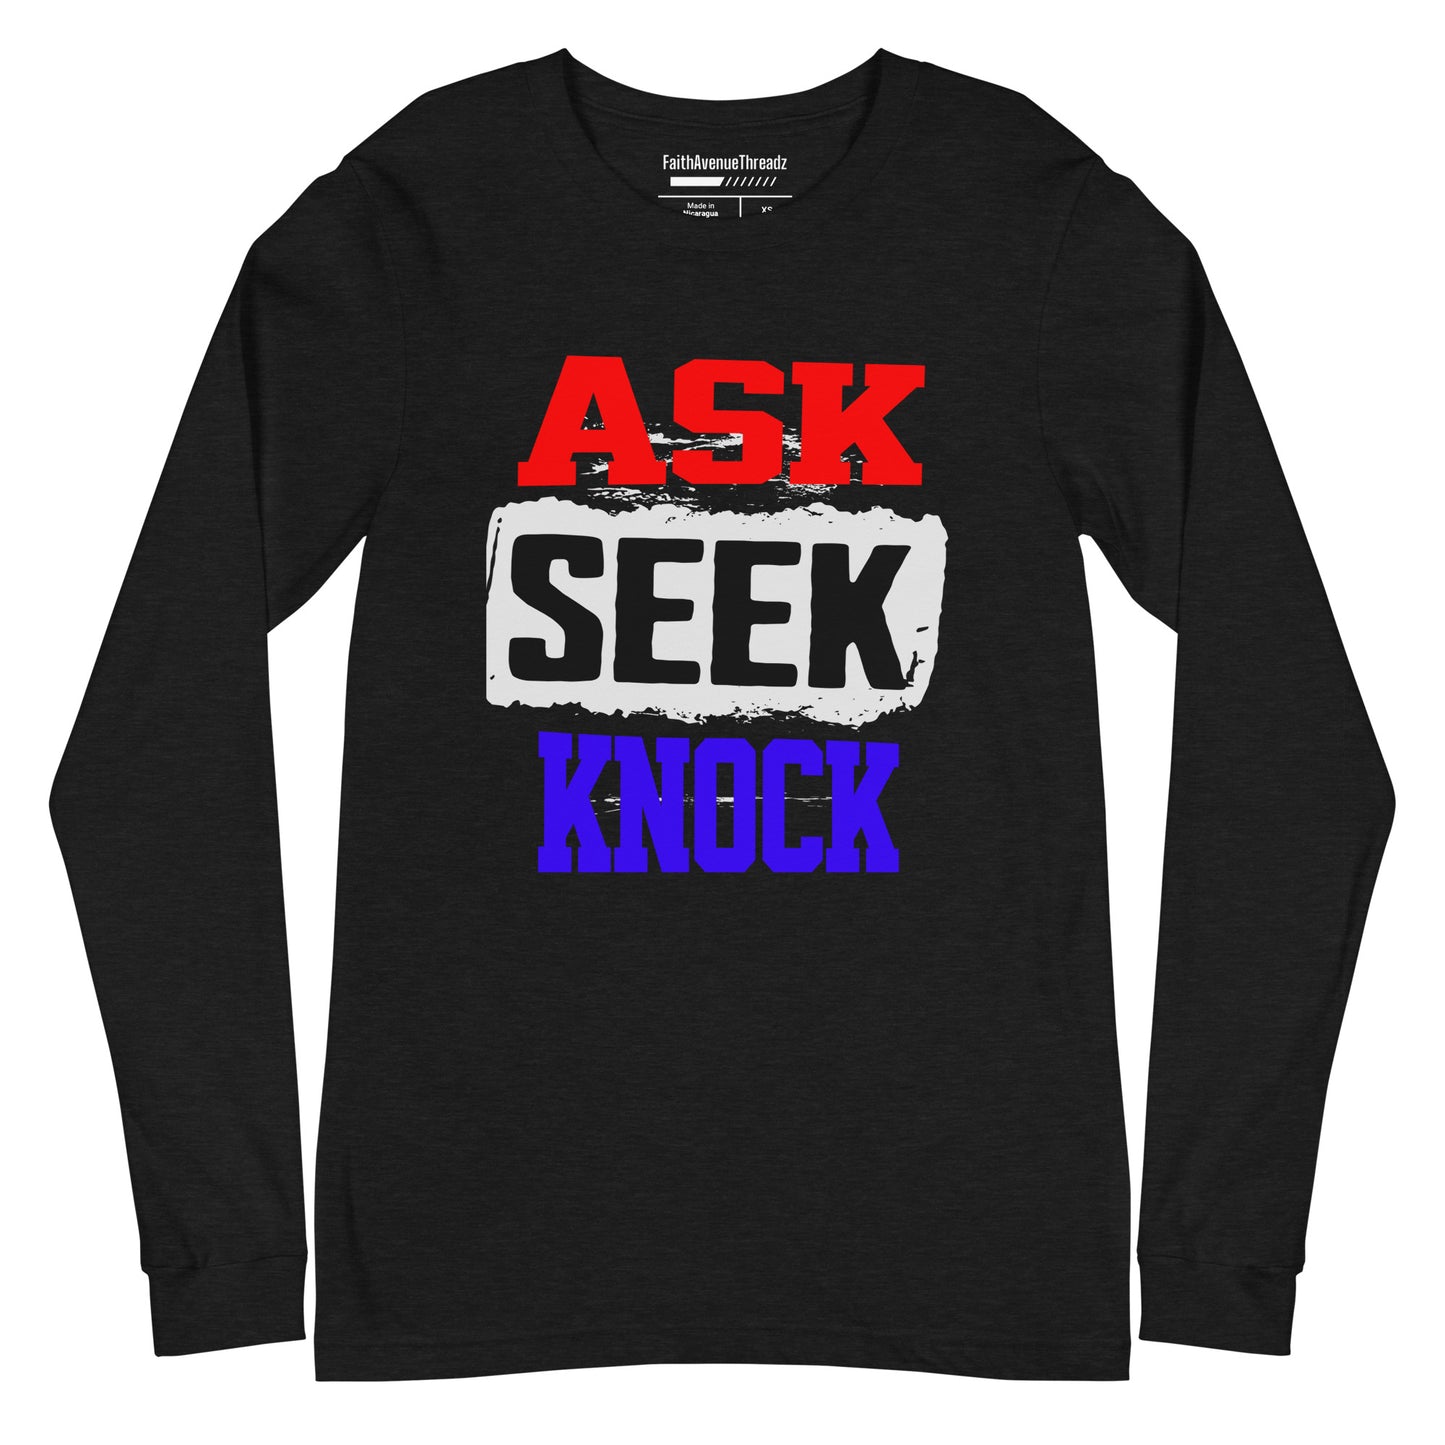 Ask, Seek, Knock Christian Long Sleeve Tee